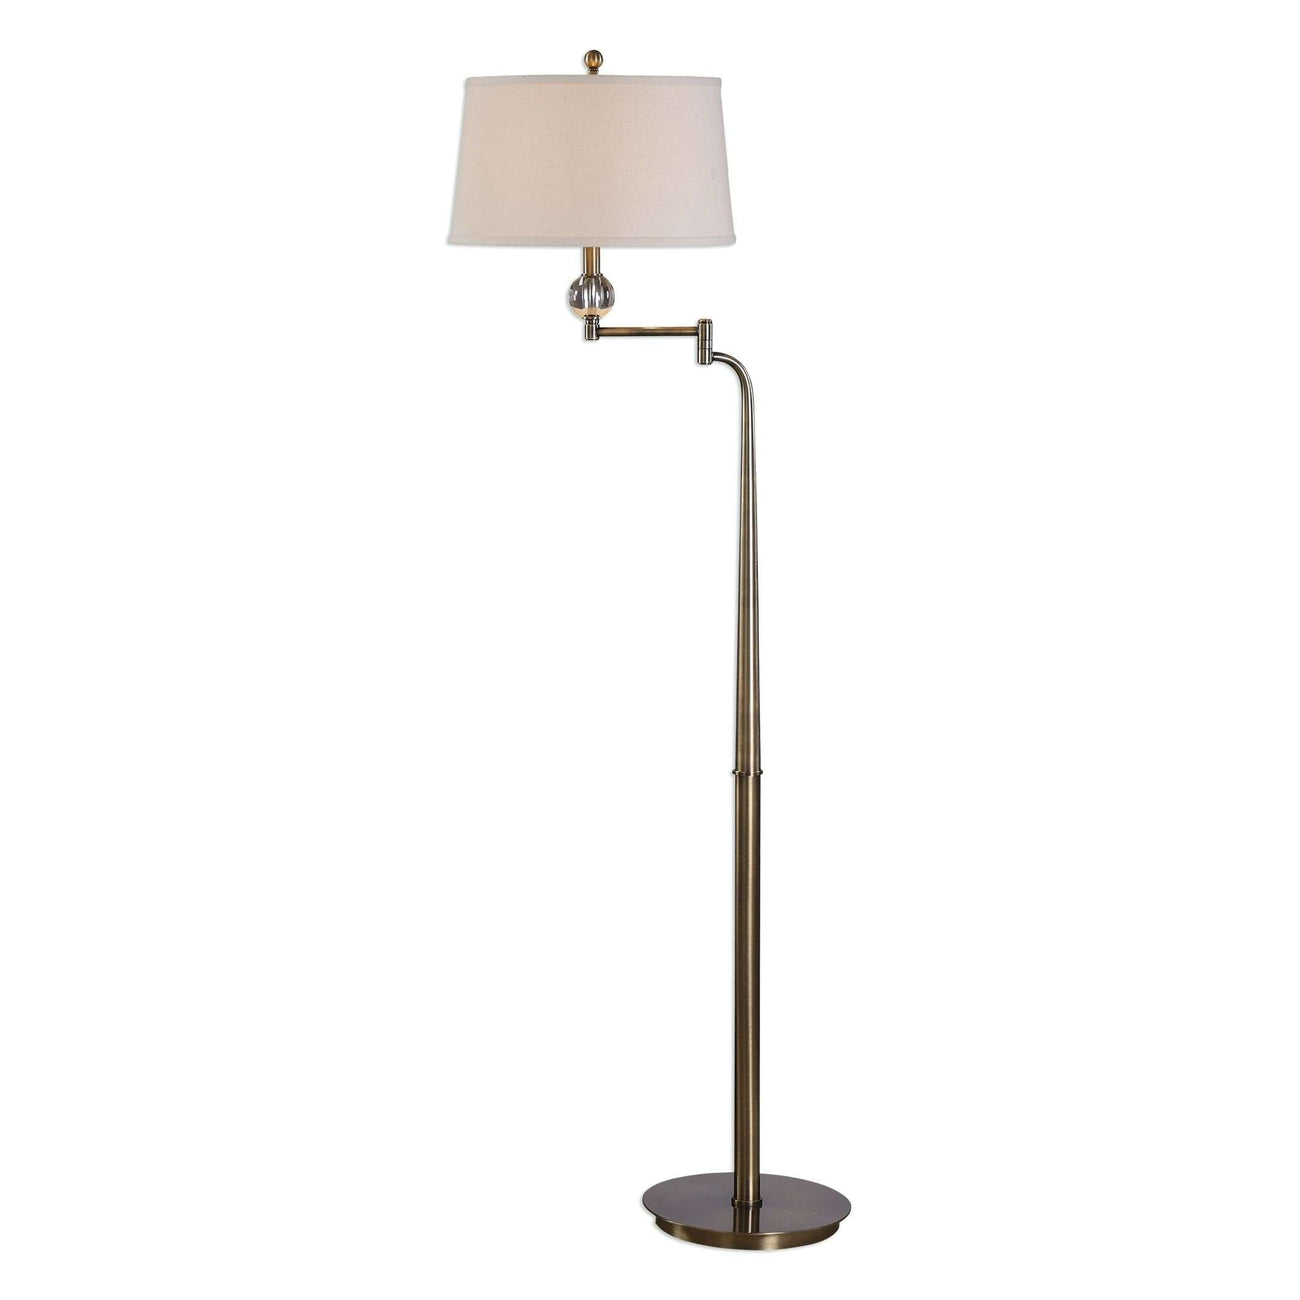 Melini Swing Arm Floor Lamp-Uttermost-UTTM-28106-Floor Lamps-1-France and Son